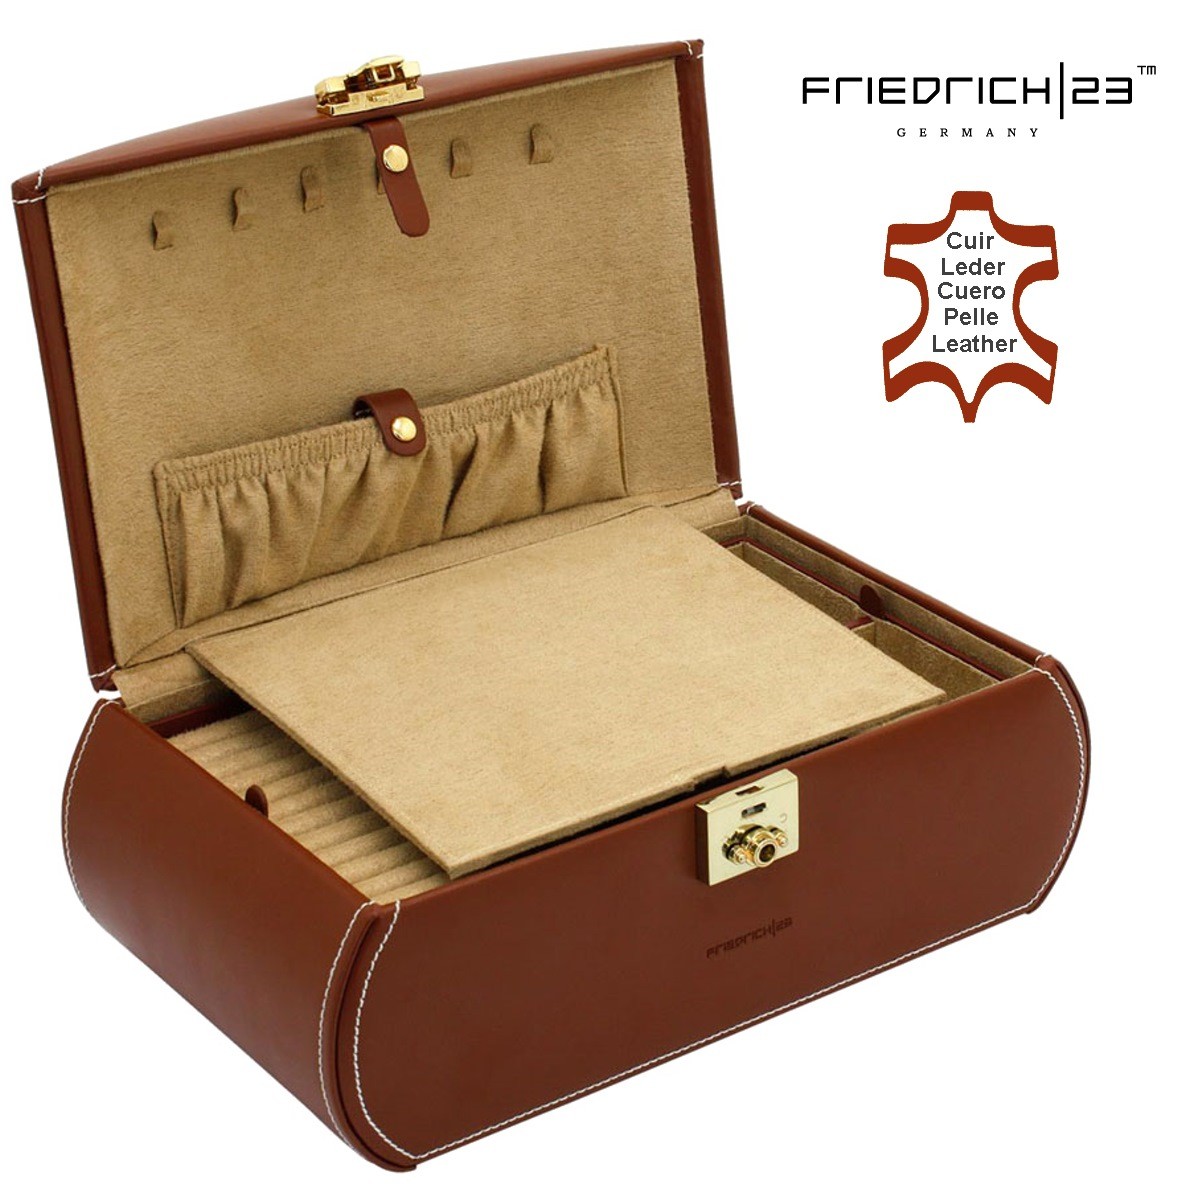 Friedrich|23 Schmuckschatulle Schmuckbox DIAGONA Braun ideal für die Schublade 